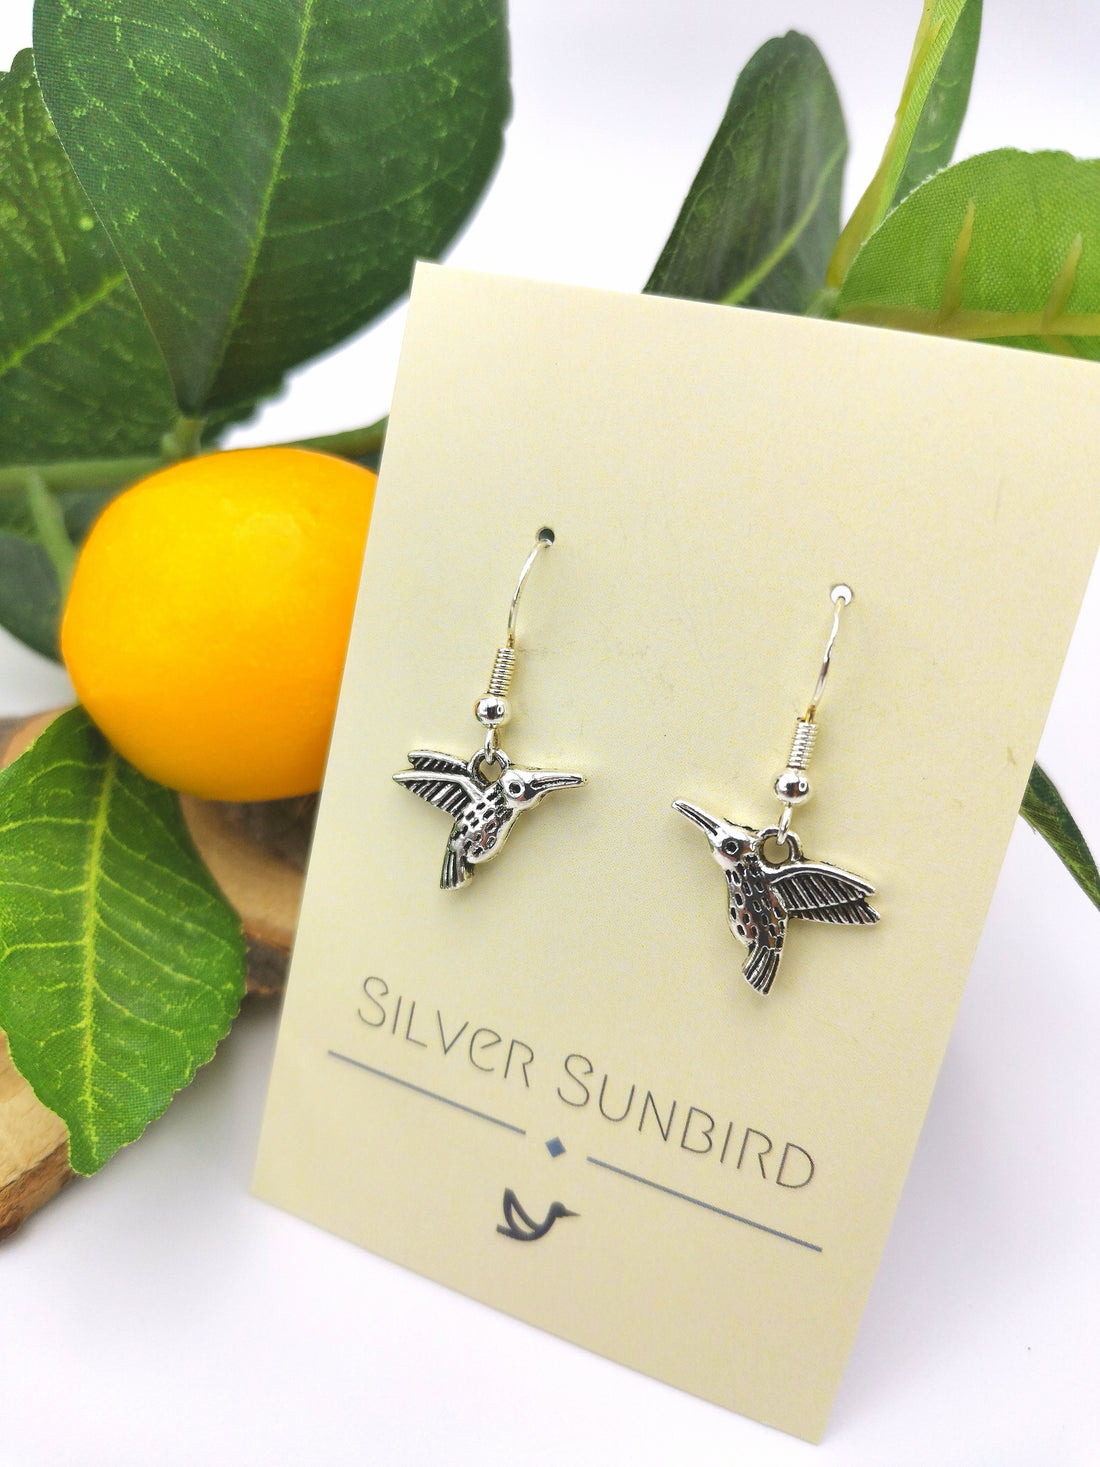 Heartfelt Hummingbird Earrings - Silver Sunbird animal earrings